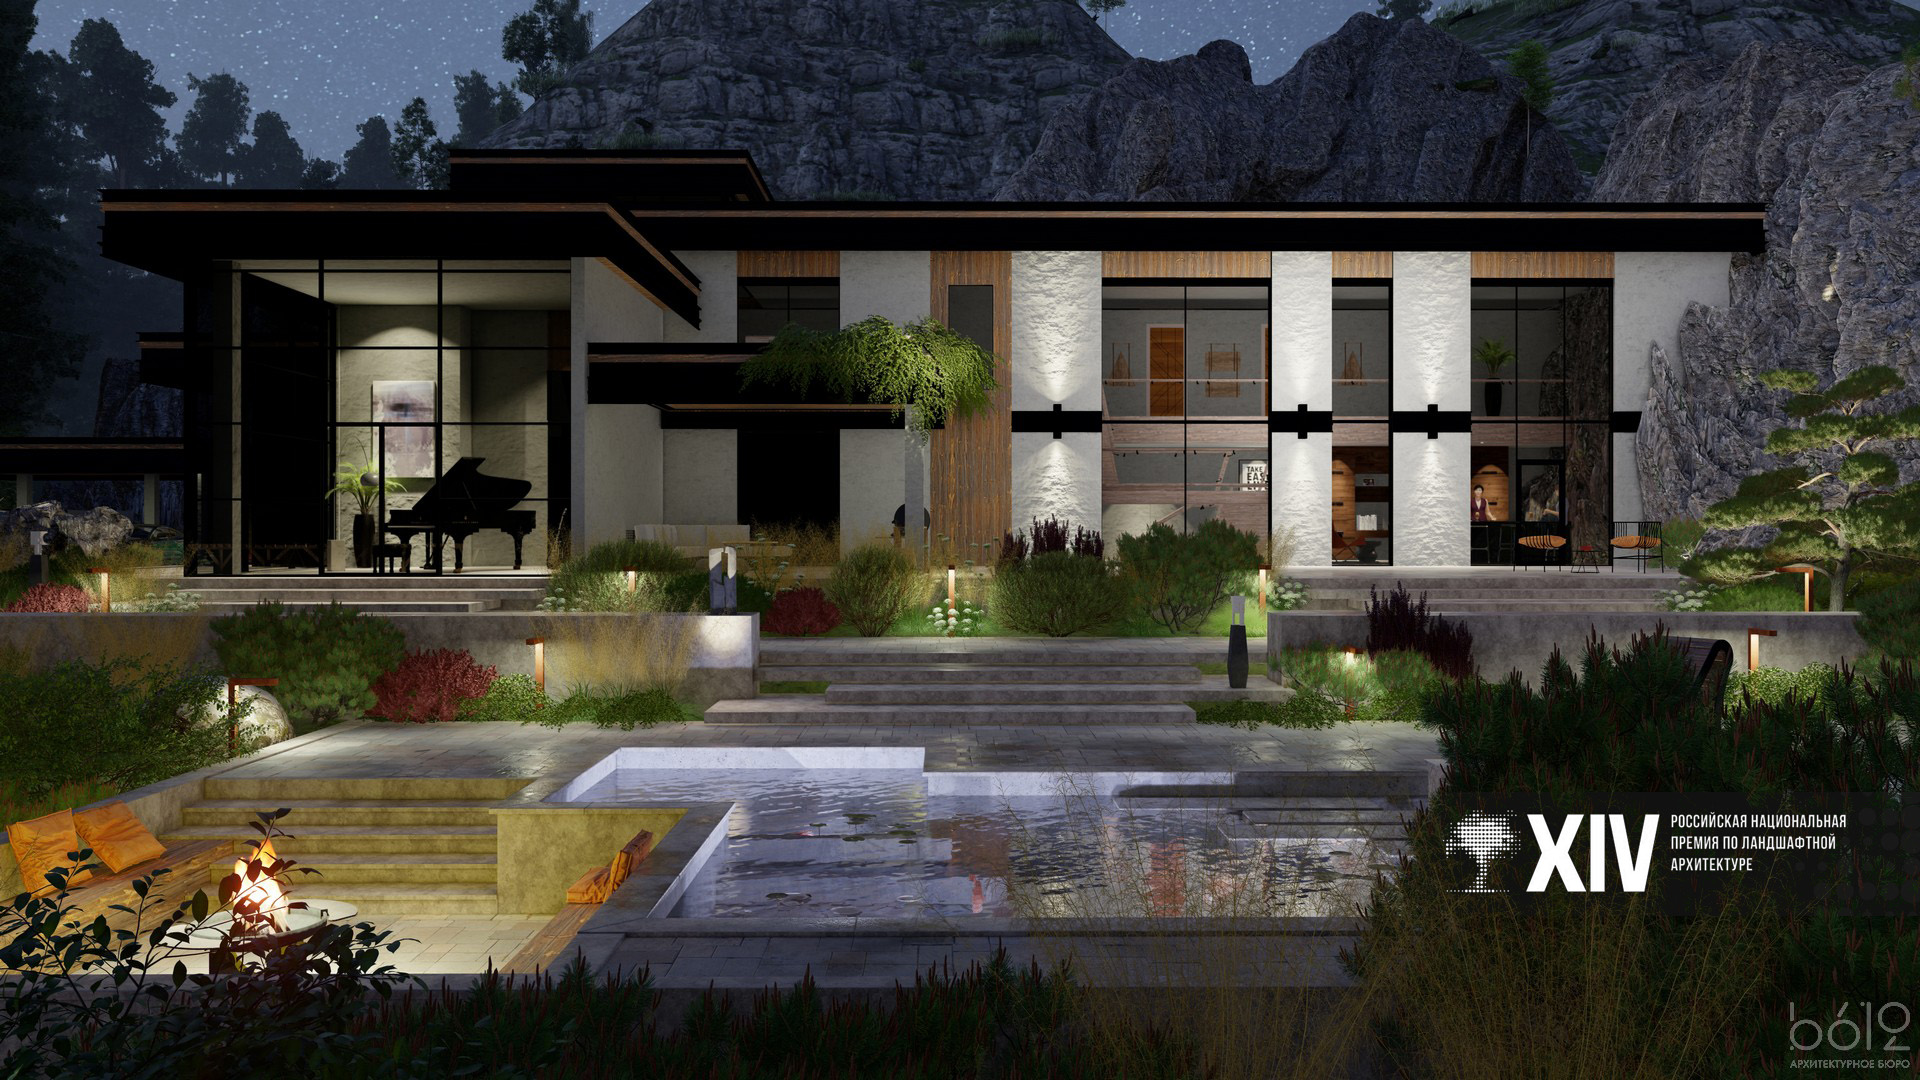 Cовременный архитектурный дизайн роскошного жилища с ландшафтным садом, водным элементом и уличным кострищем